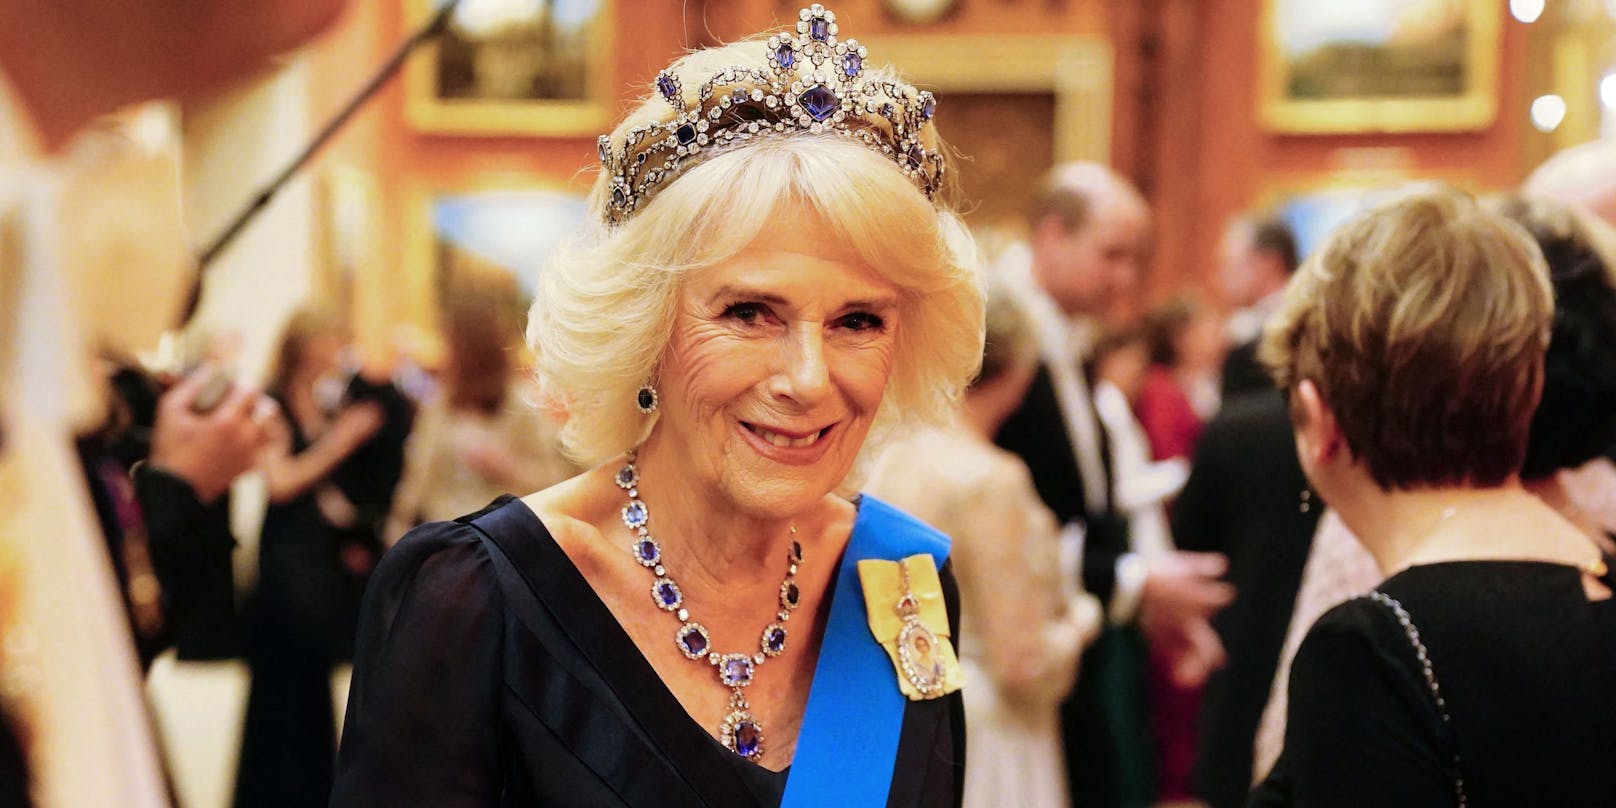 Camilla wird erstmals offiziell als "Queen" bezeichnet.